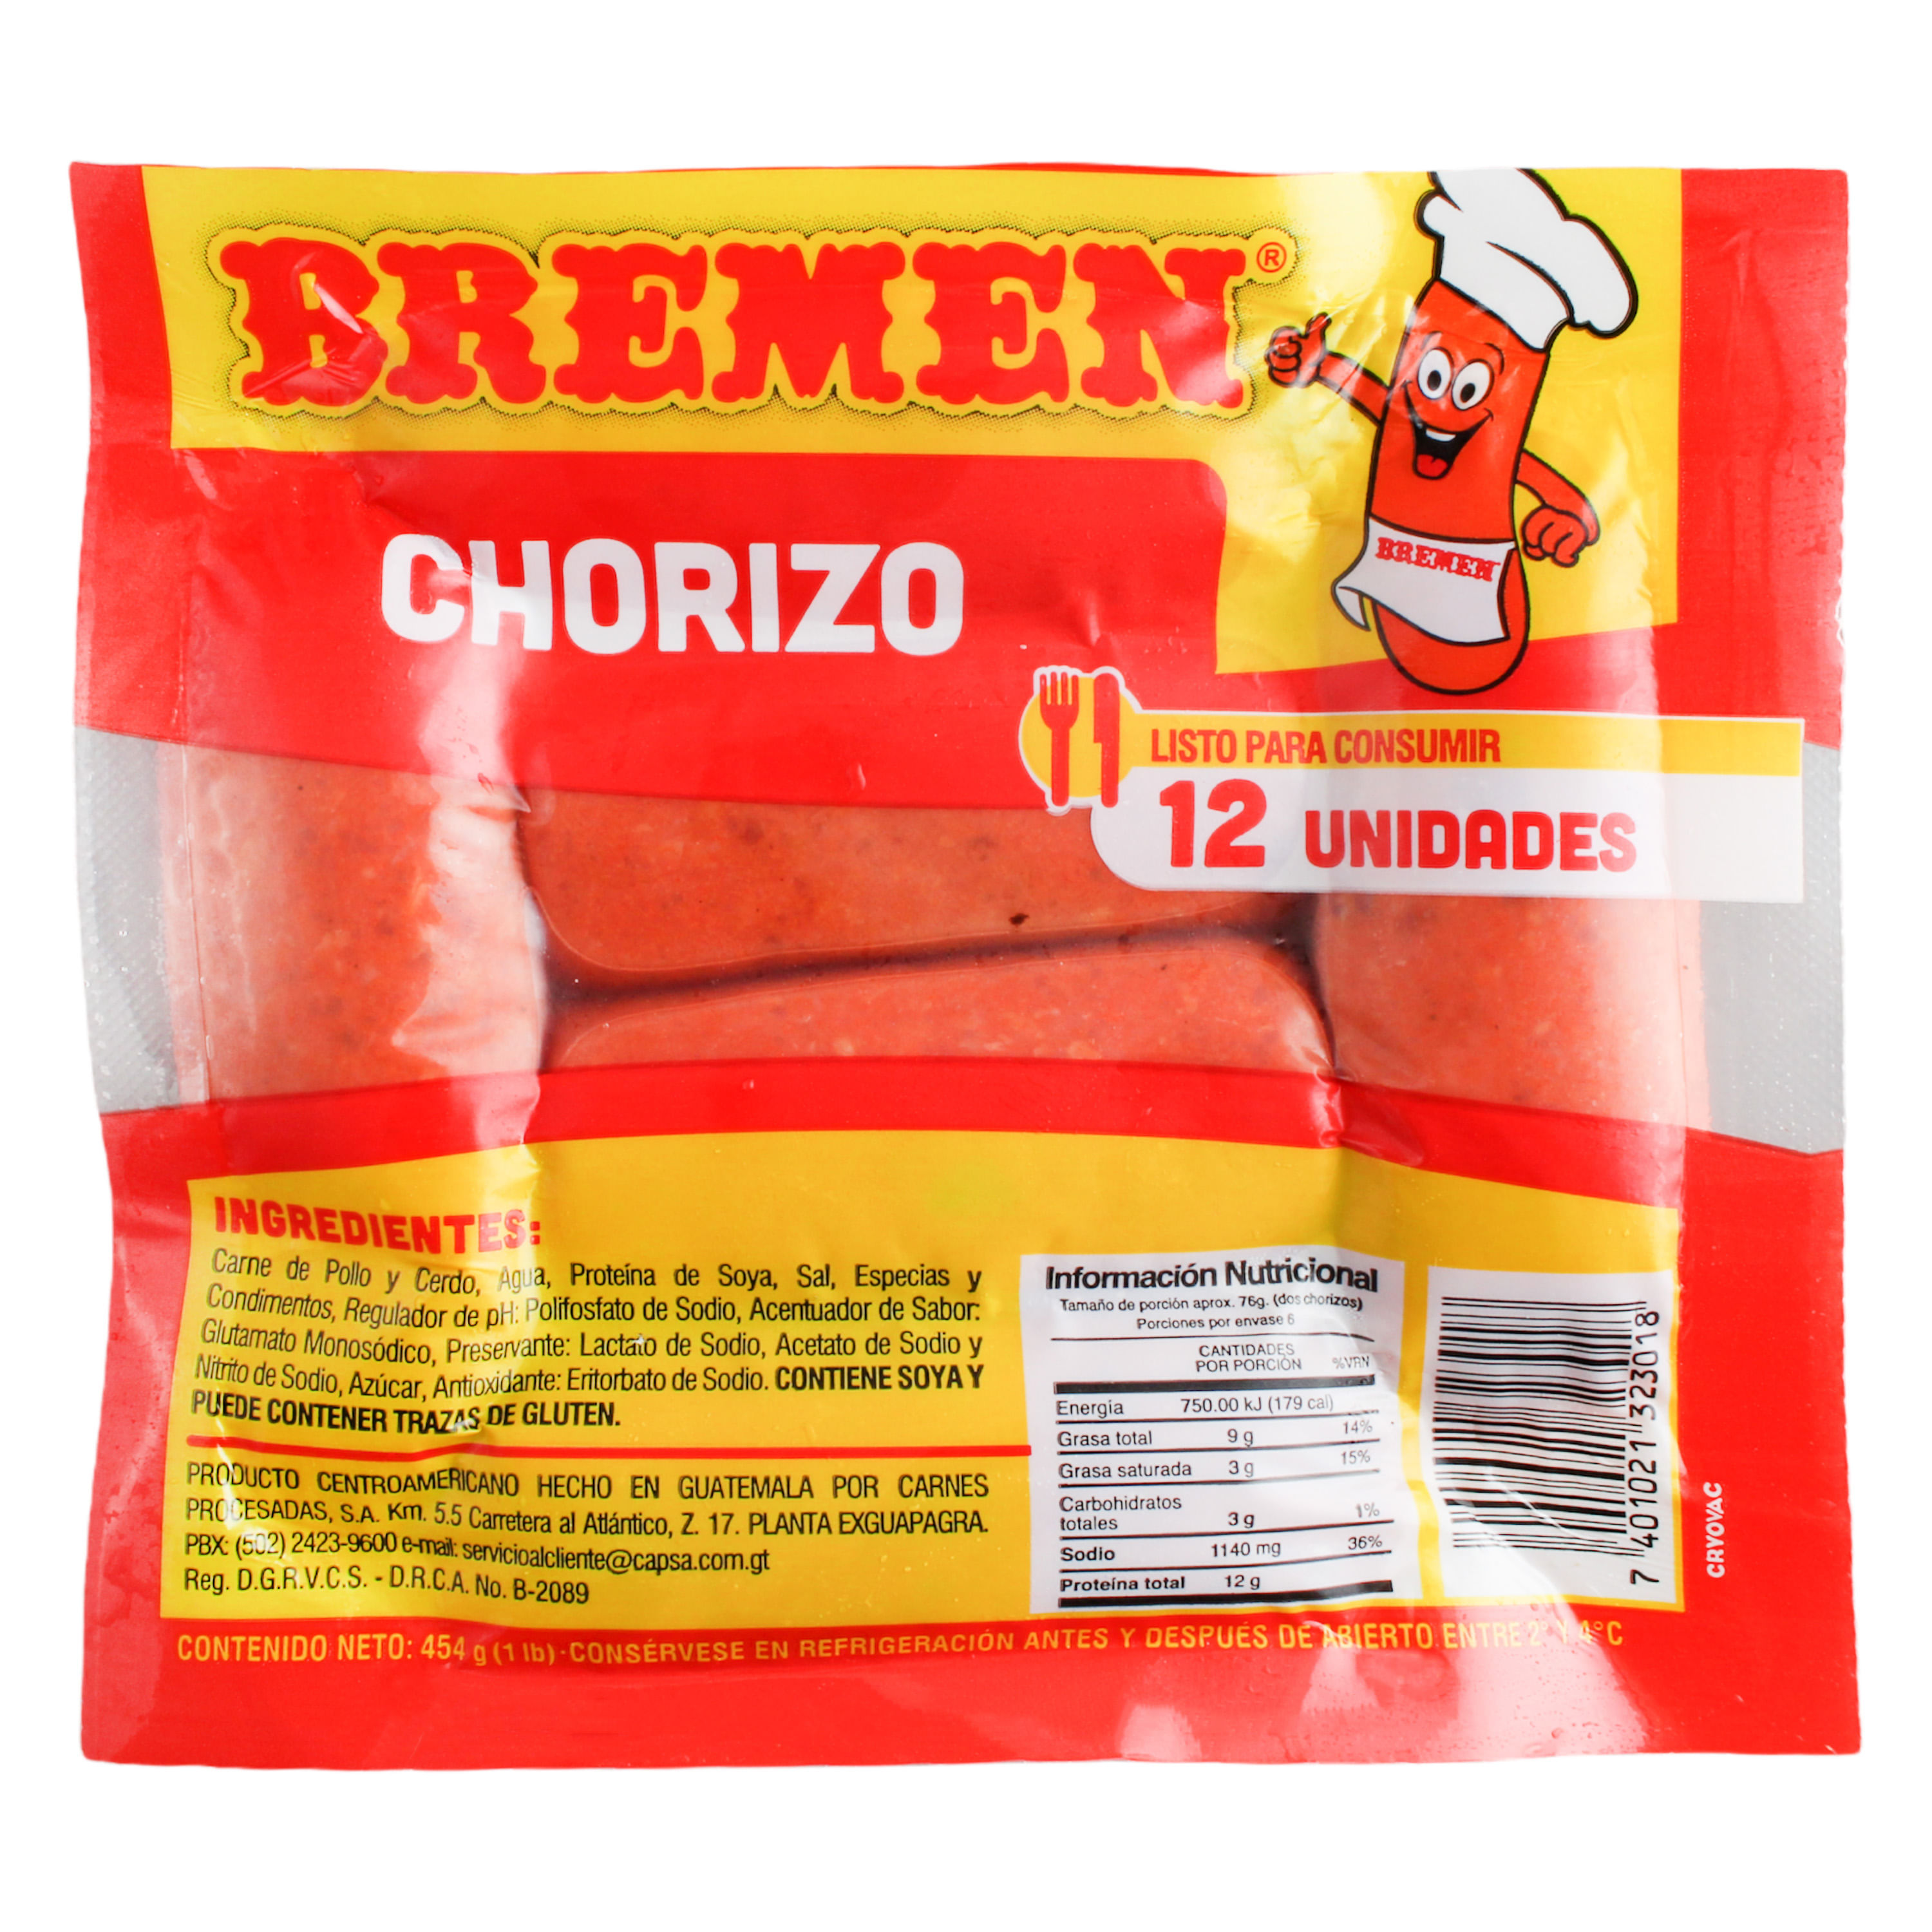 Chorizo-Bremen-Precocido-12-Unidades-454gr-1-28274